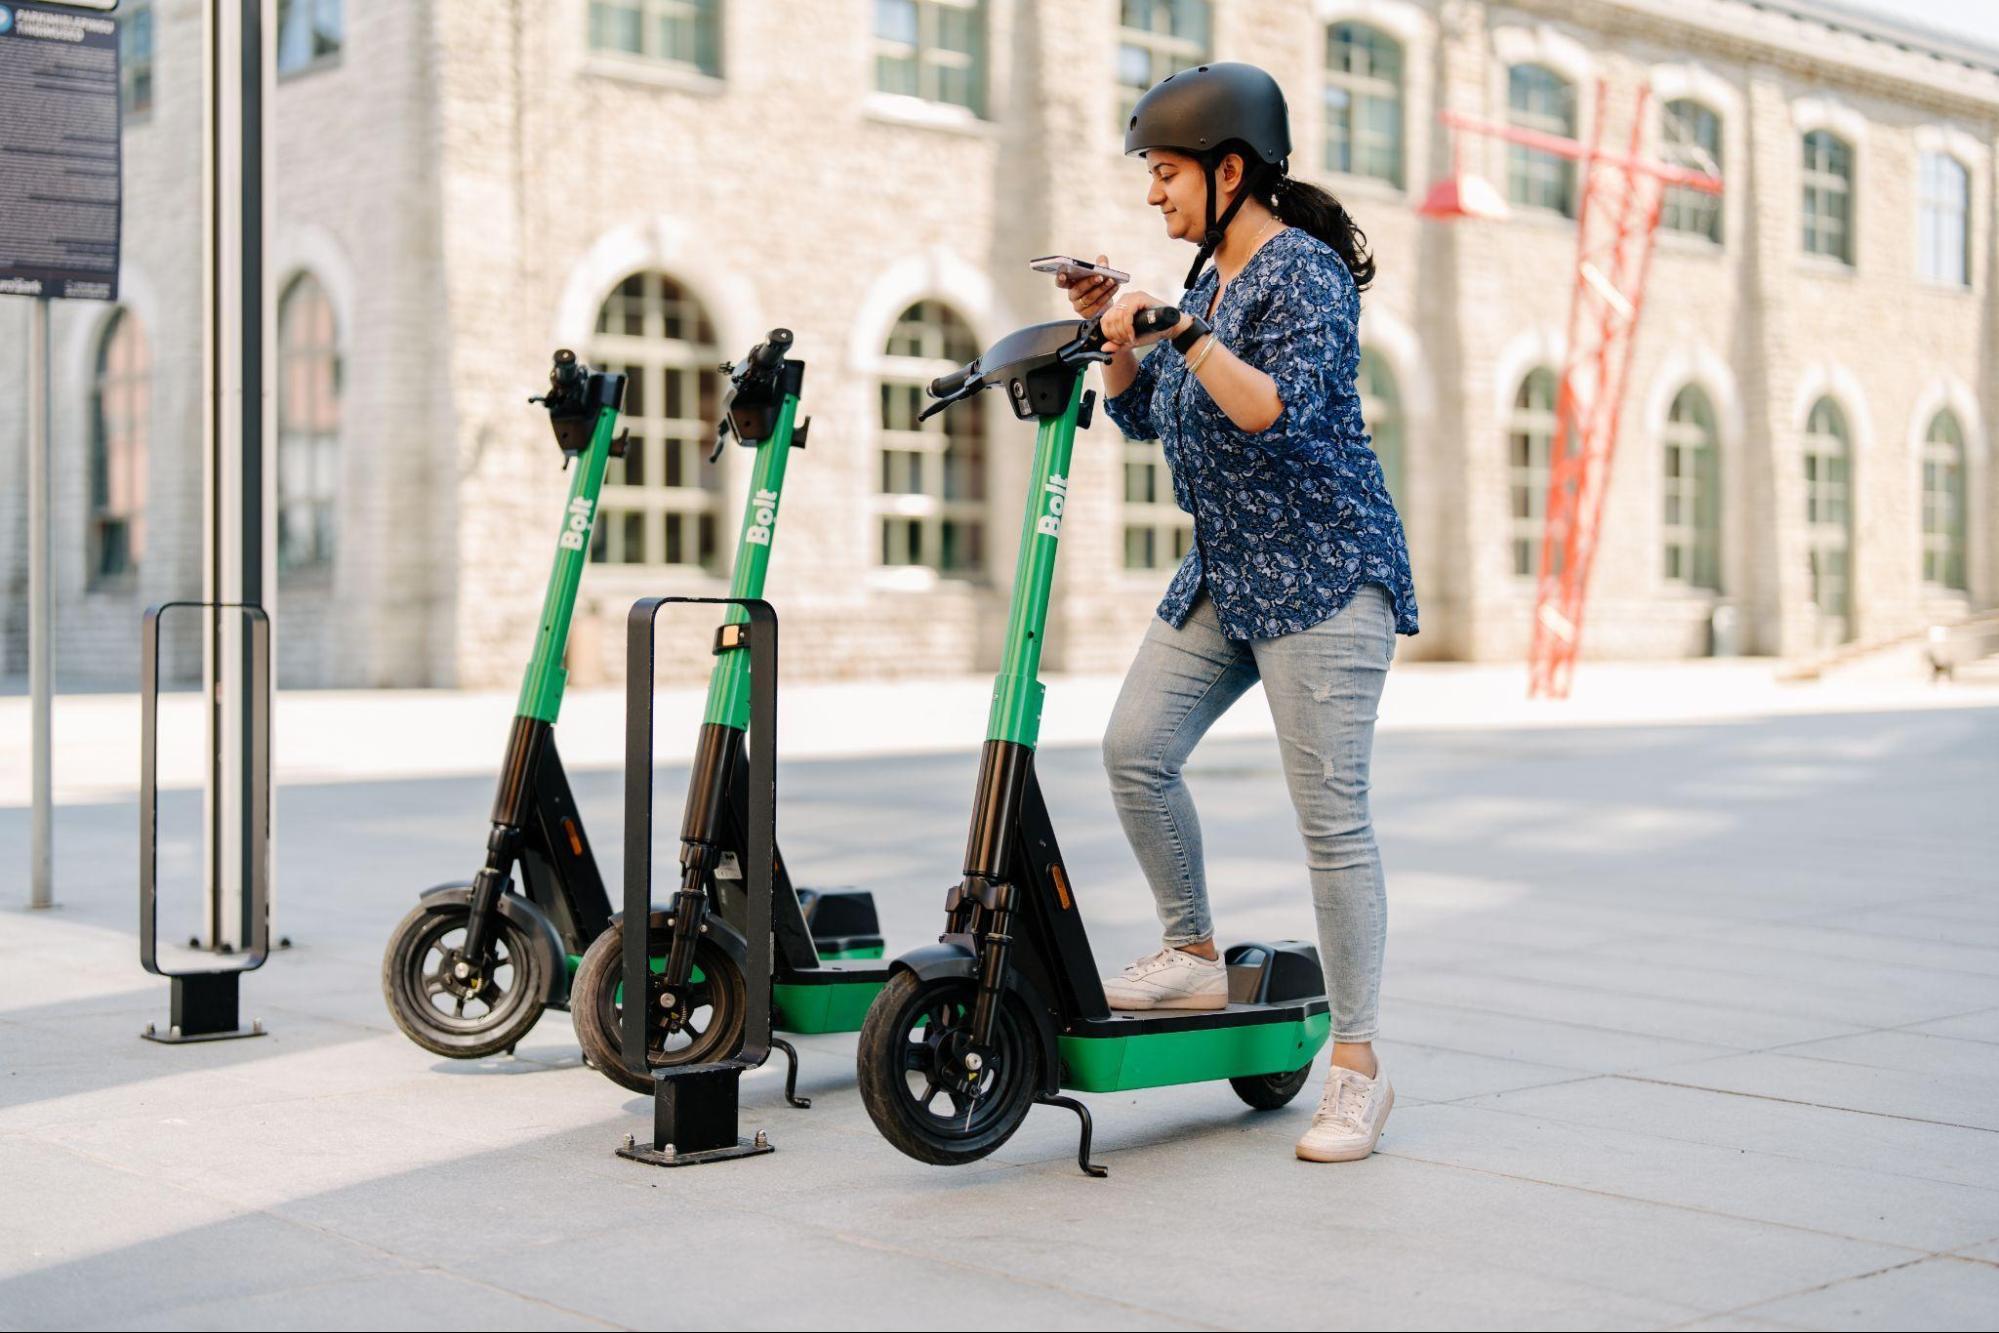 Bolt propose des scooters et des vélos électriques partagés pratiques et sûrs